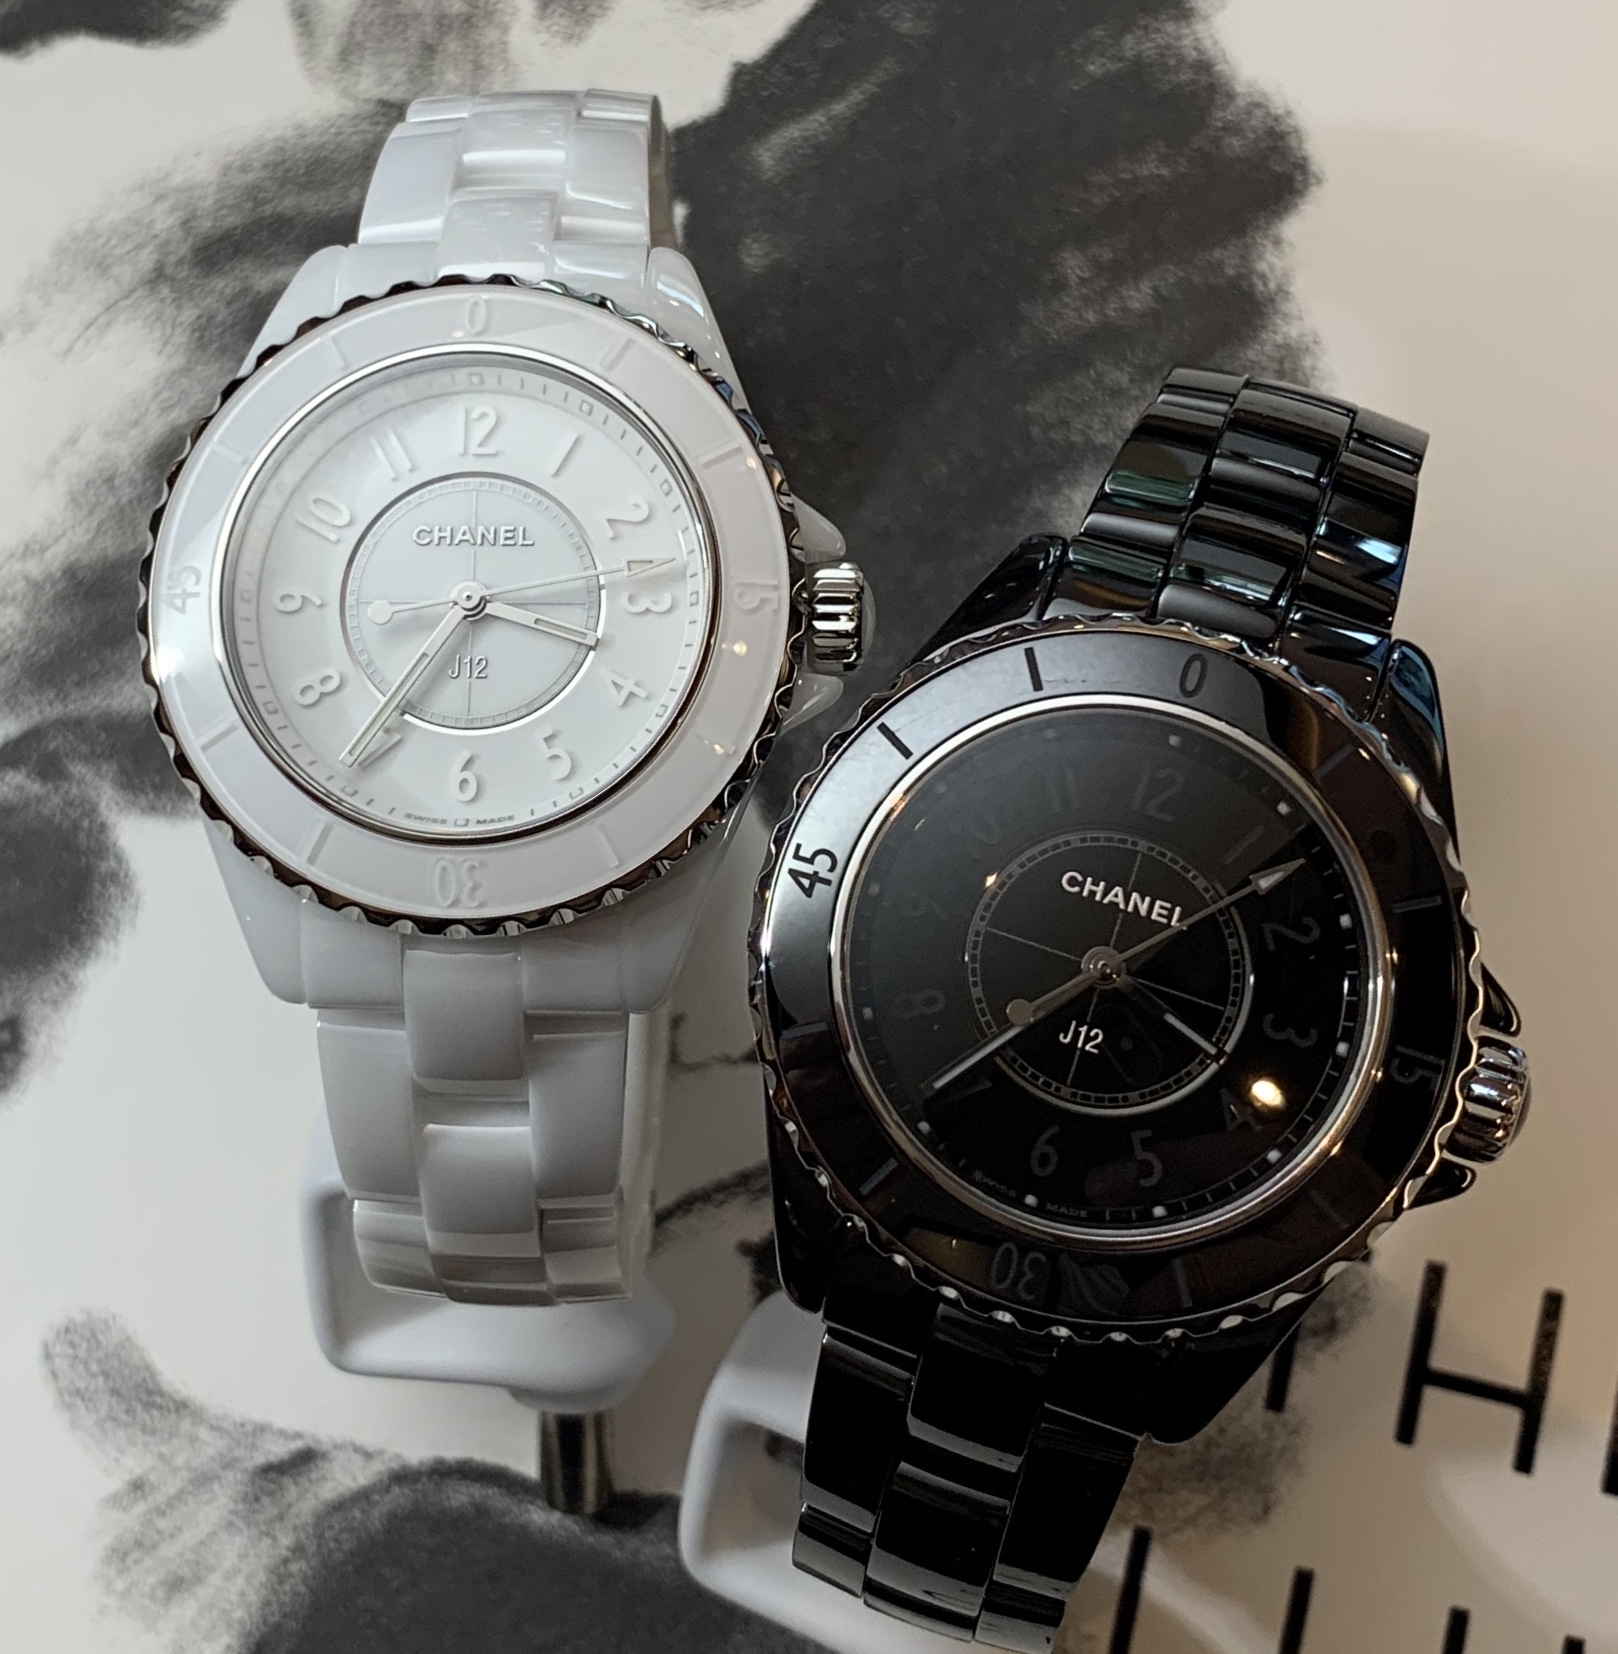 シャネル(CHANEL) | ブランド腕時計の正規販売店紹介サイトGressive/グレッシブ